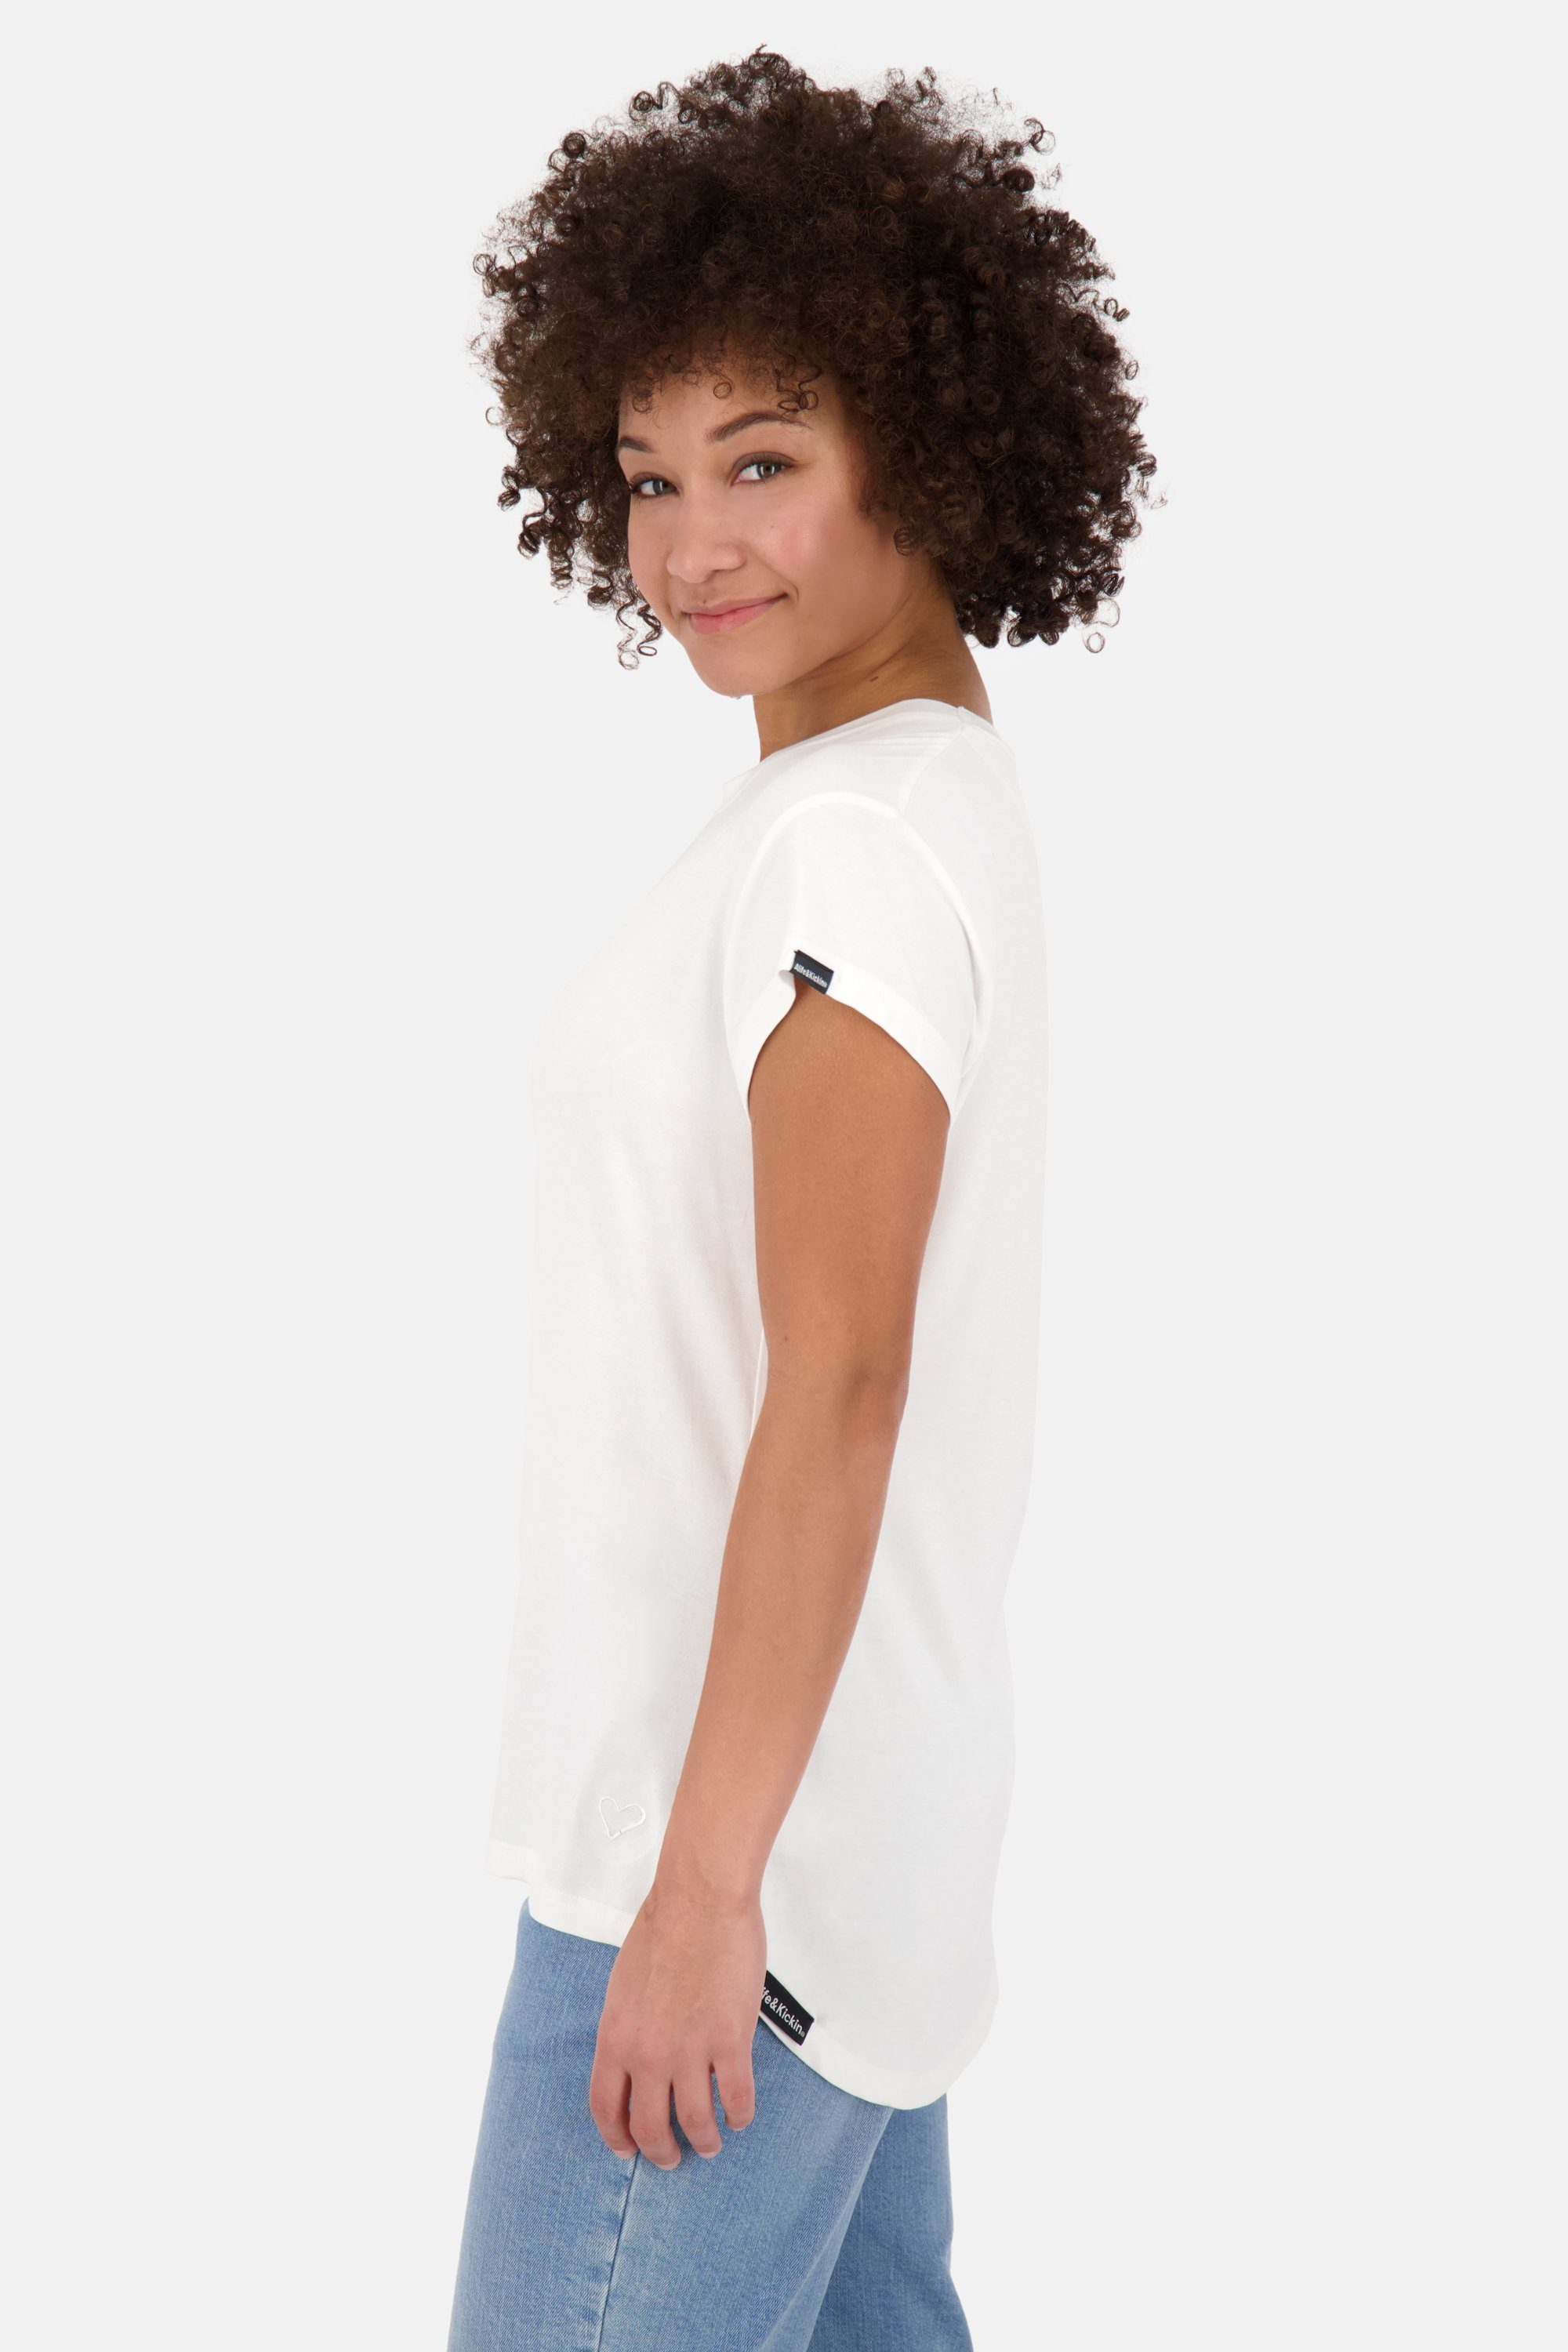 Kurzarmshirt, white A Damen Alife Shirt MimmyAK Shirt Kickin & Rundhalsshirt